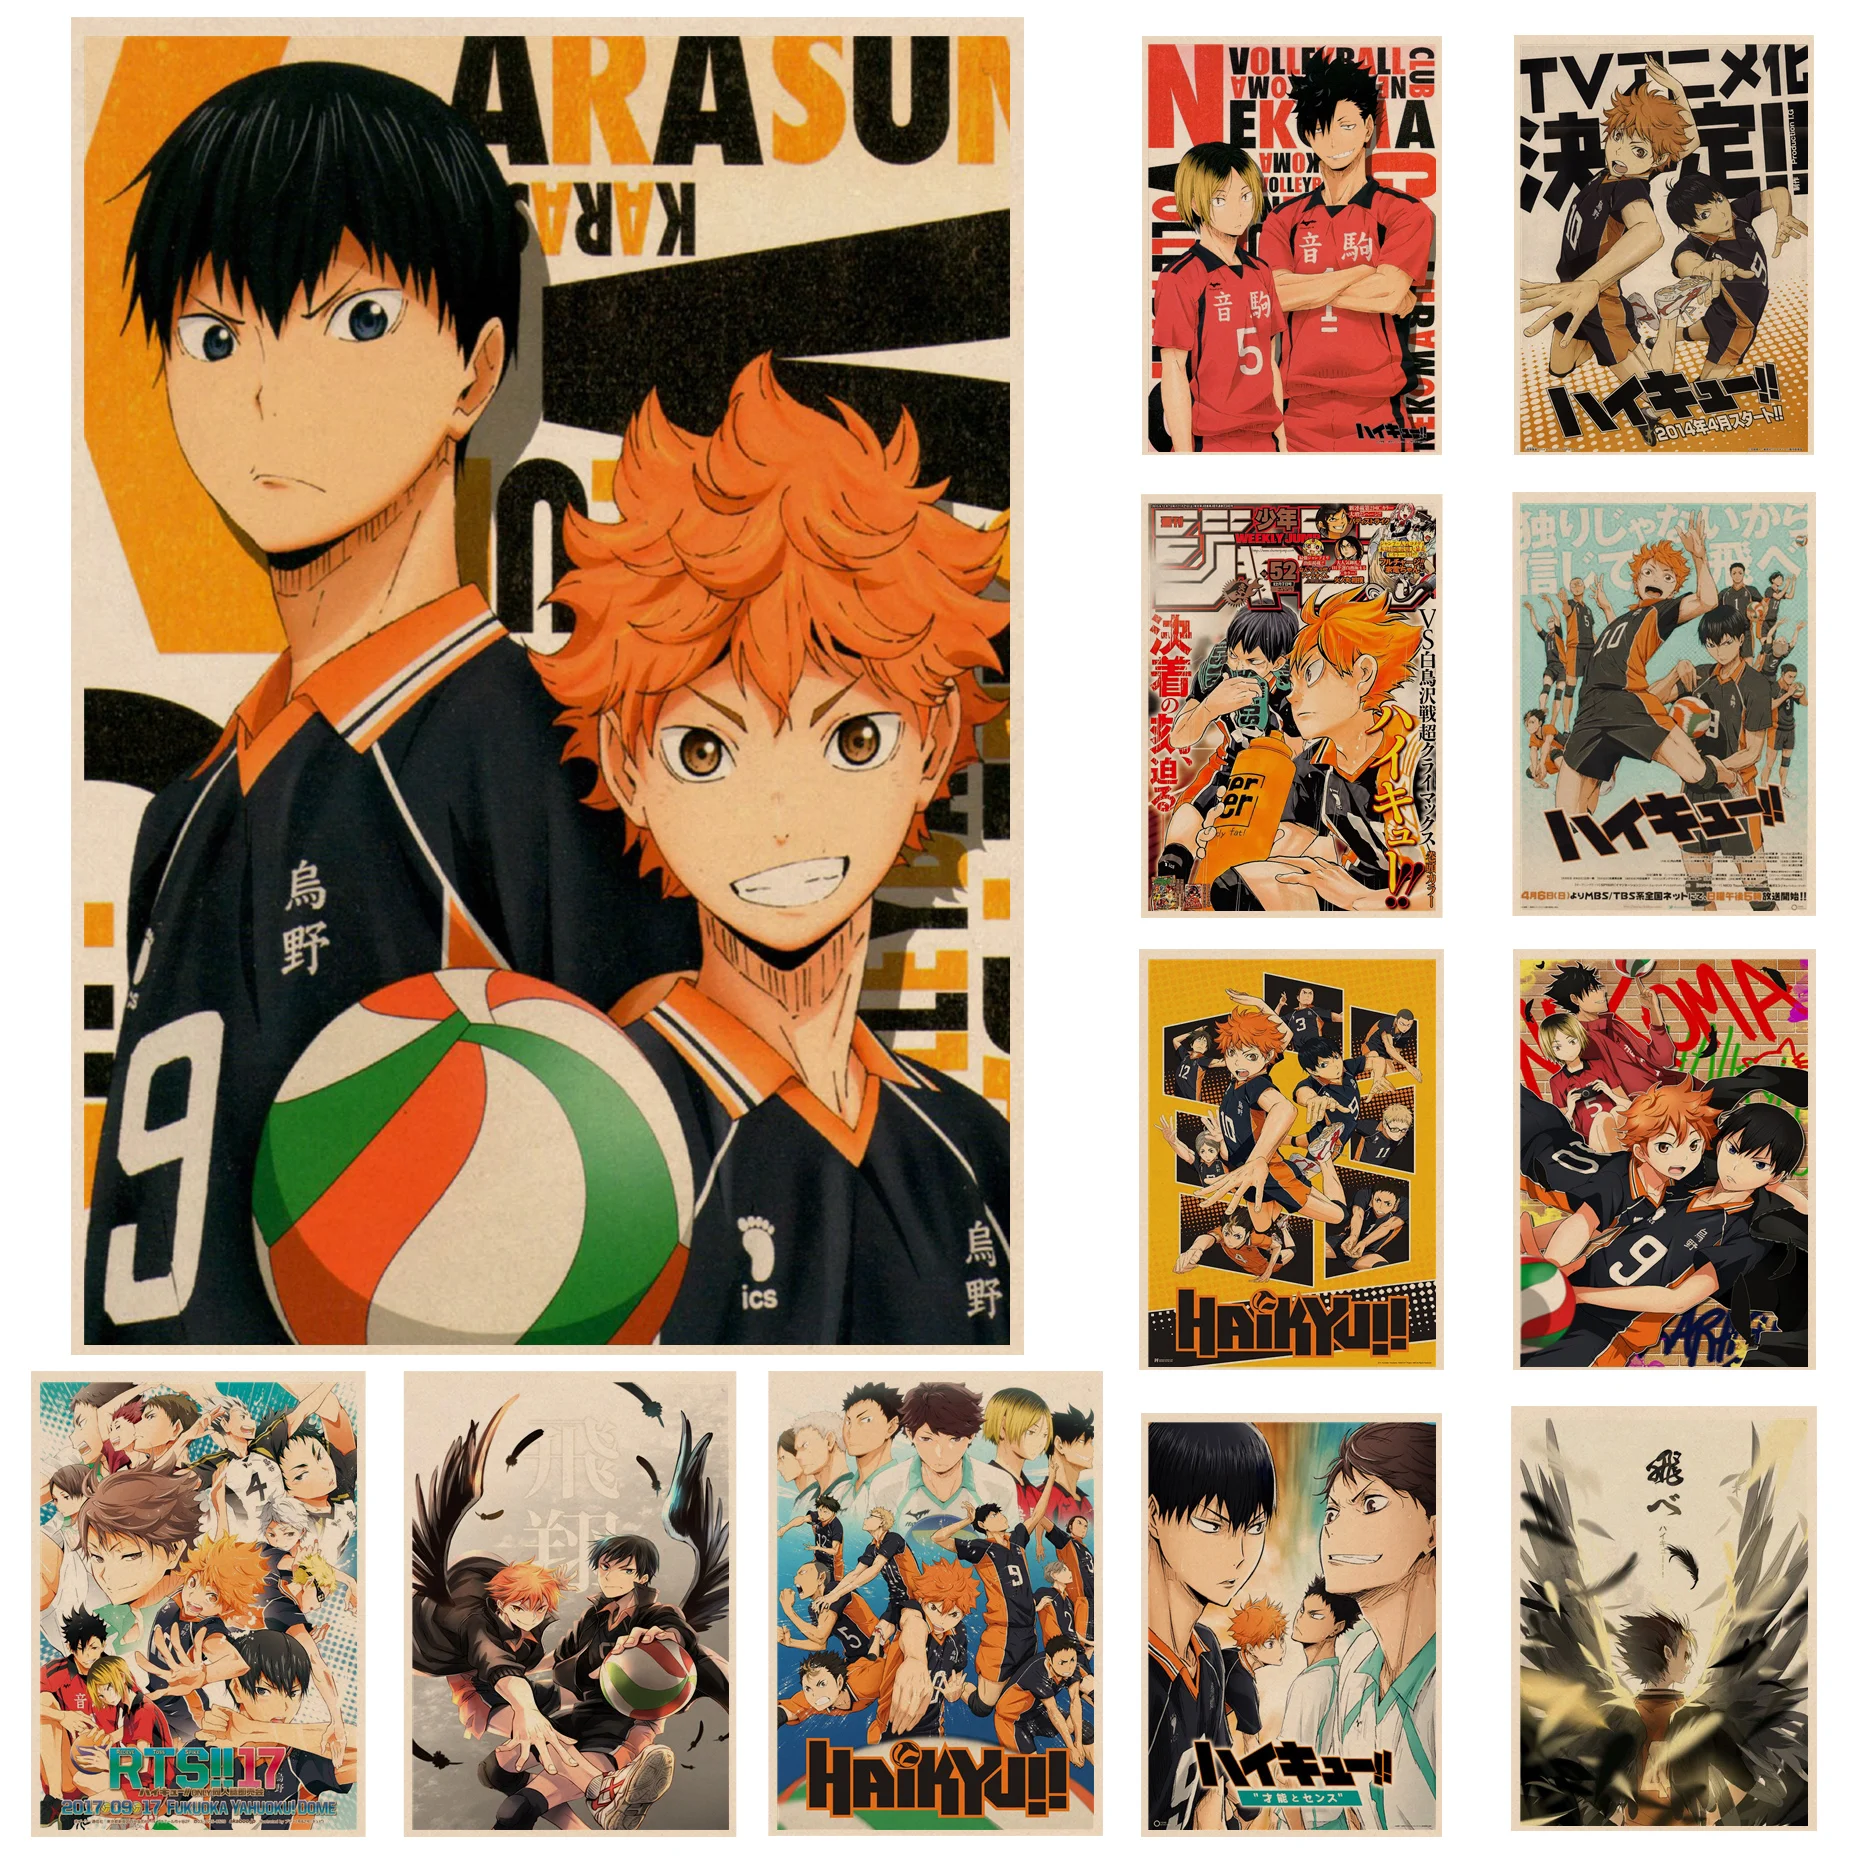 Compre Japão anime haikyuu voleibol menino dos desenhos animados